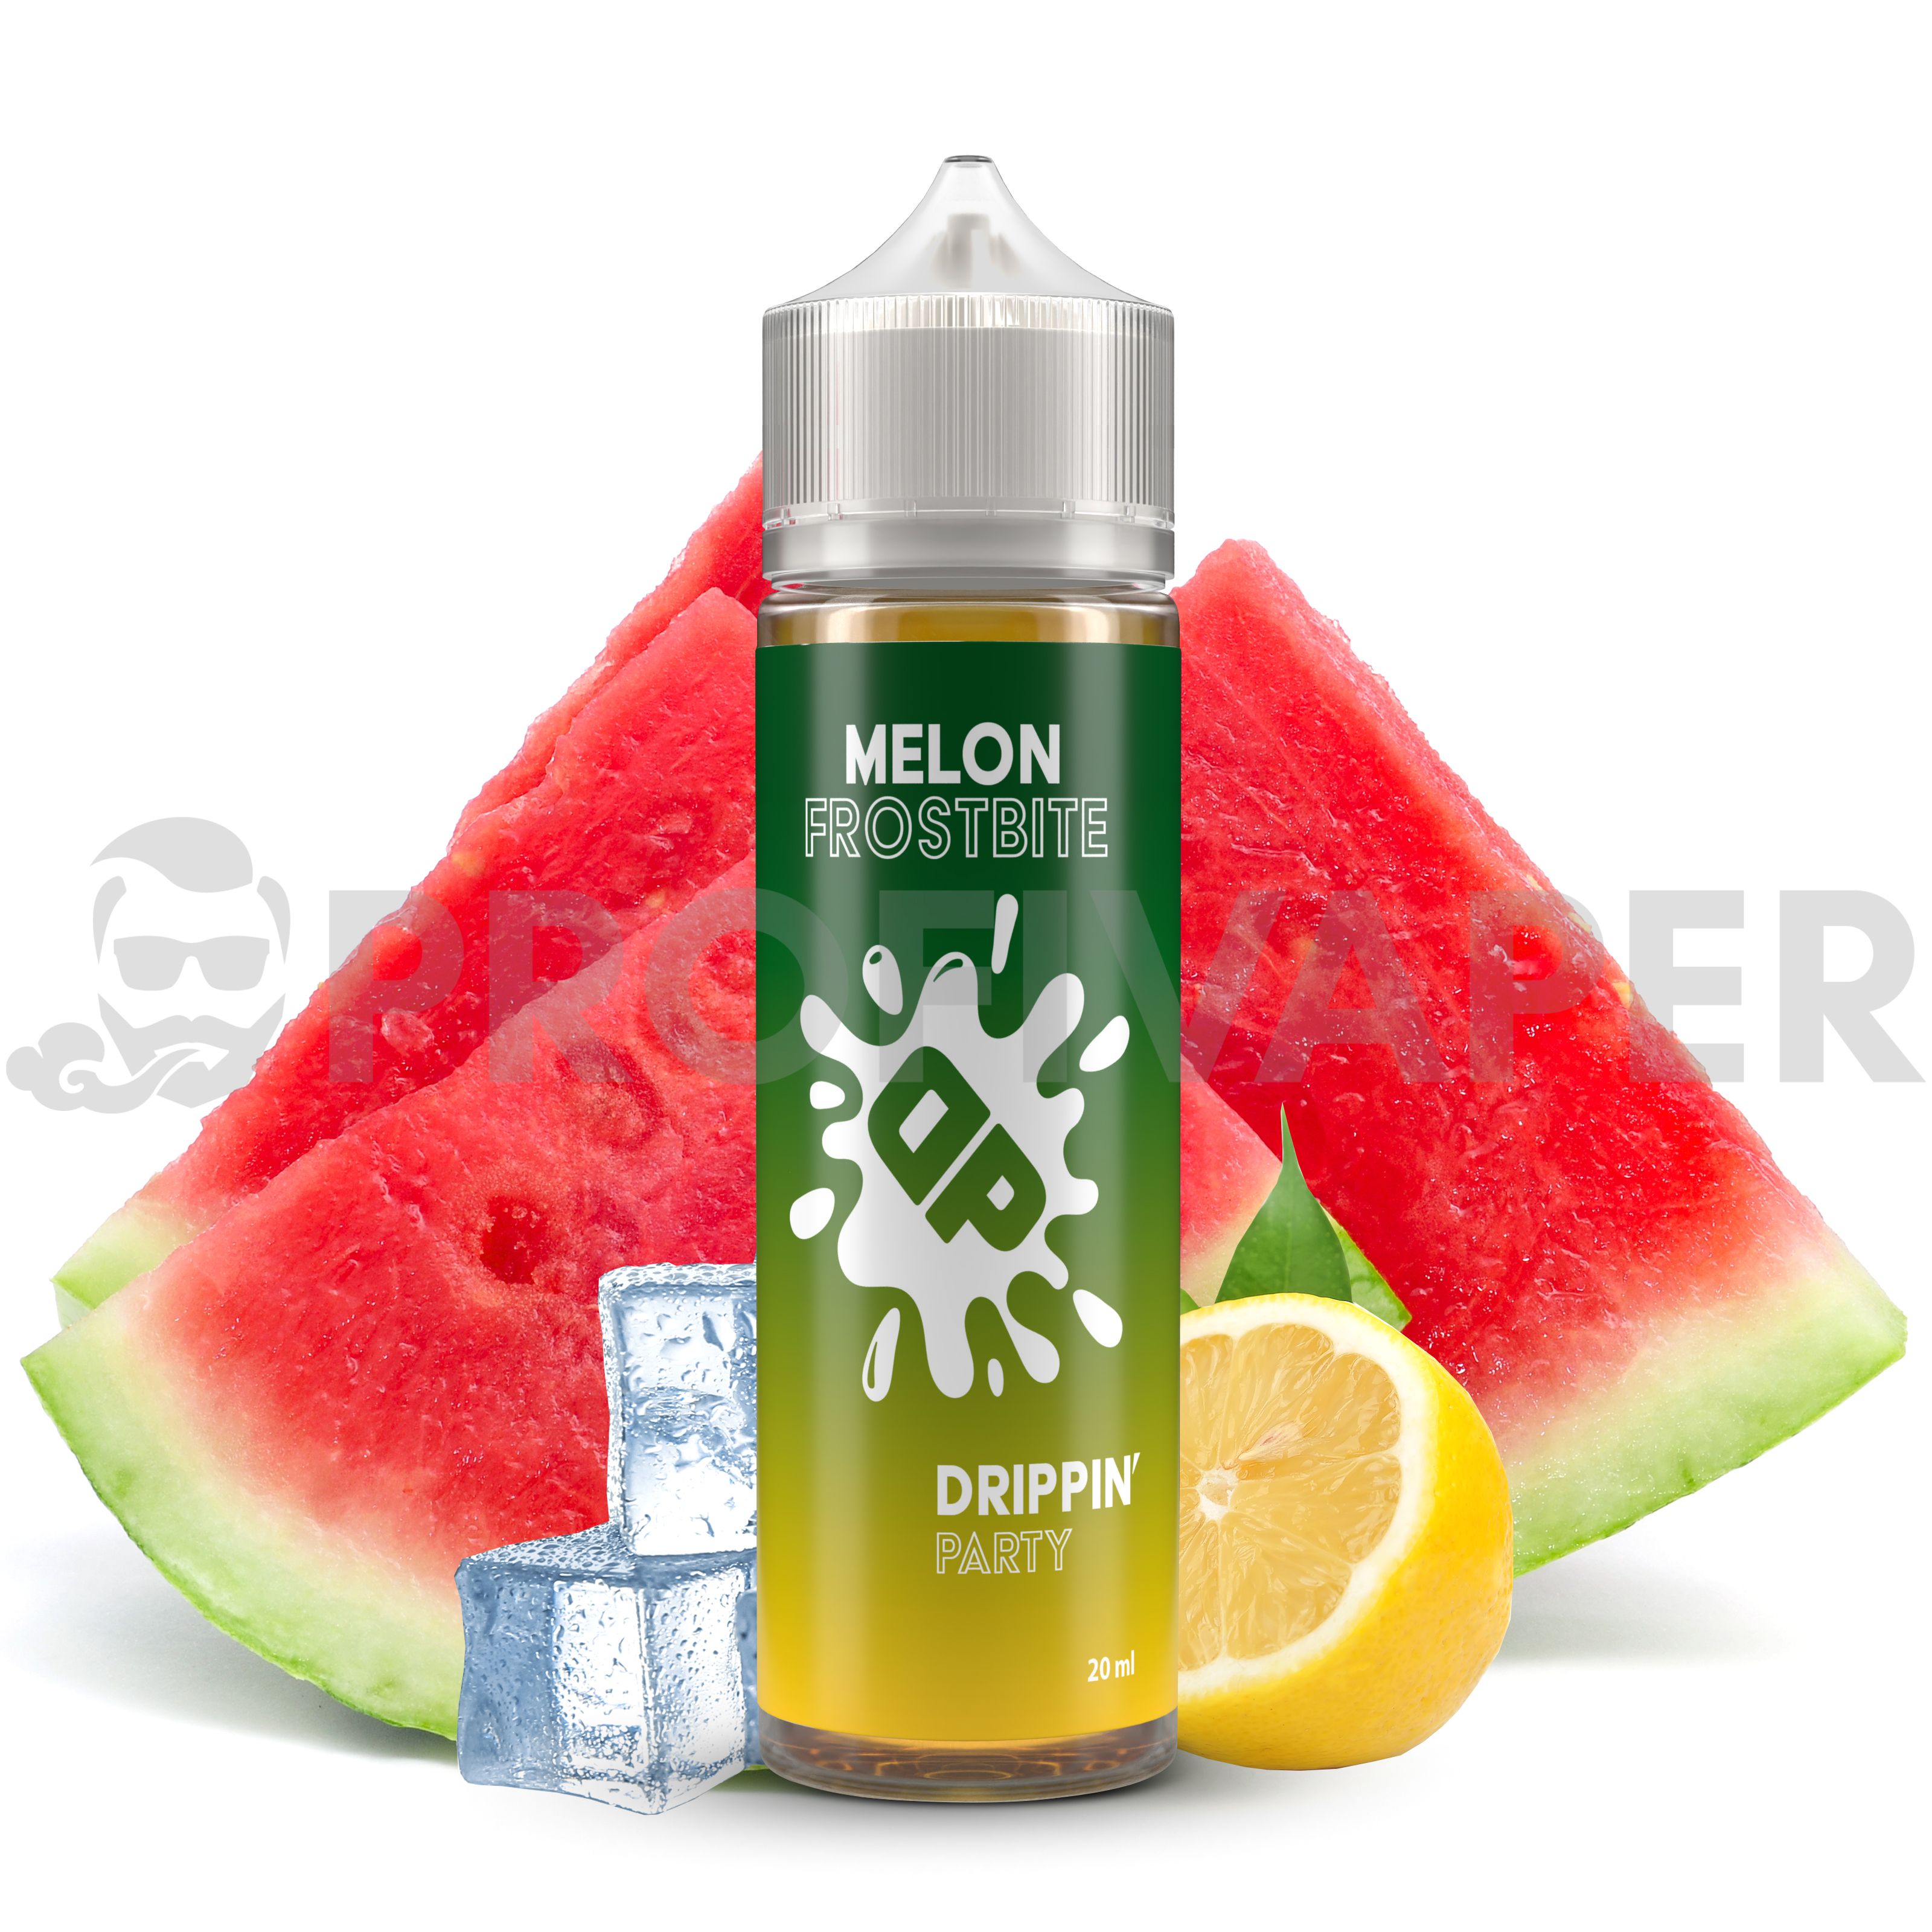 Drippin Party - Melon Frostbite (Chladivý vodní meloun a citron) Shake&Vape